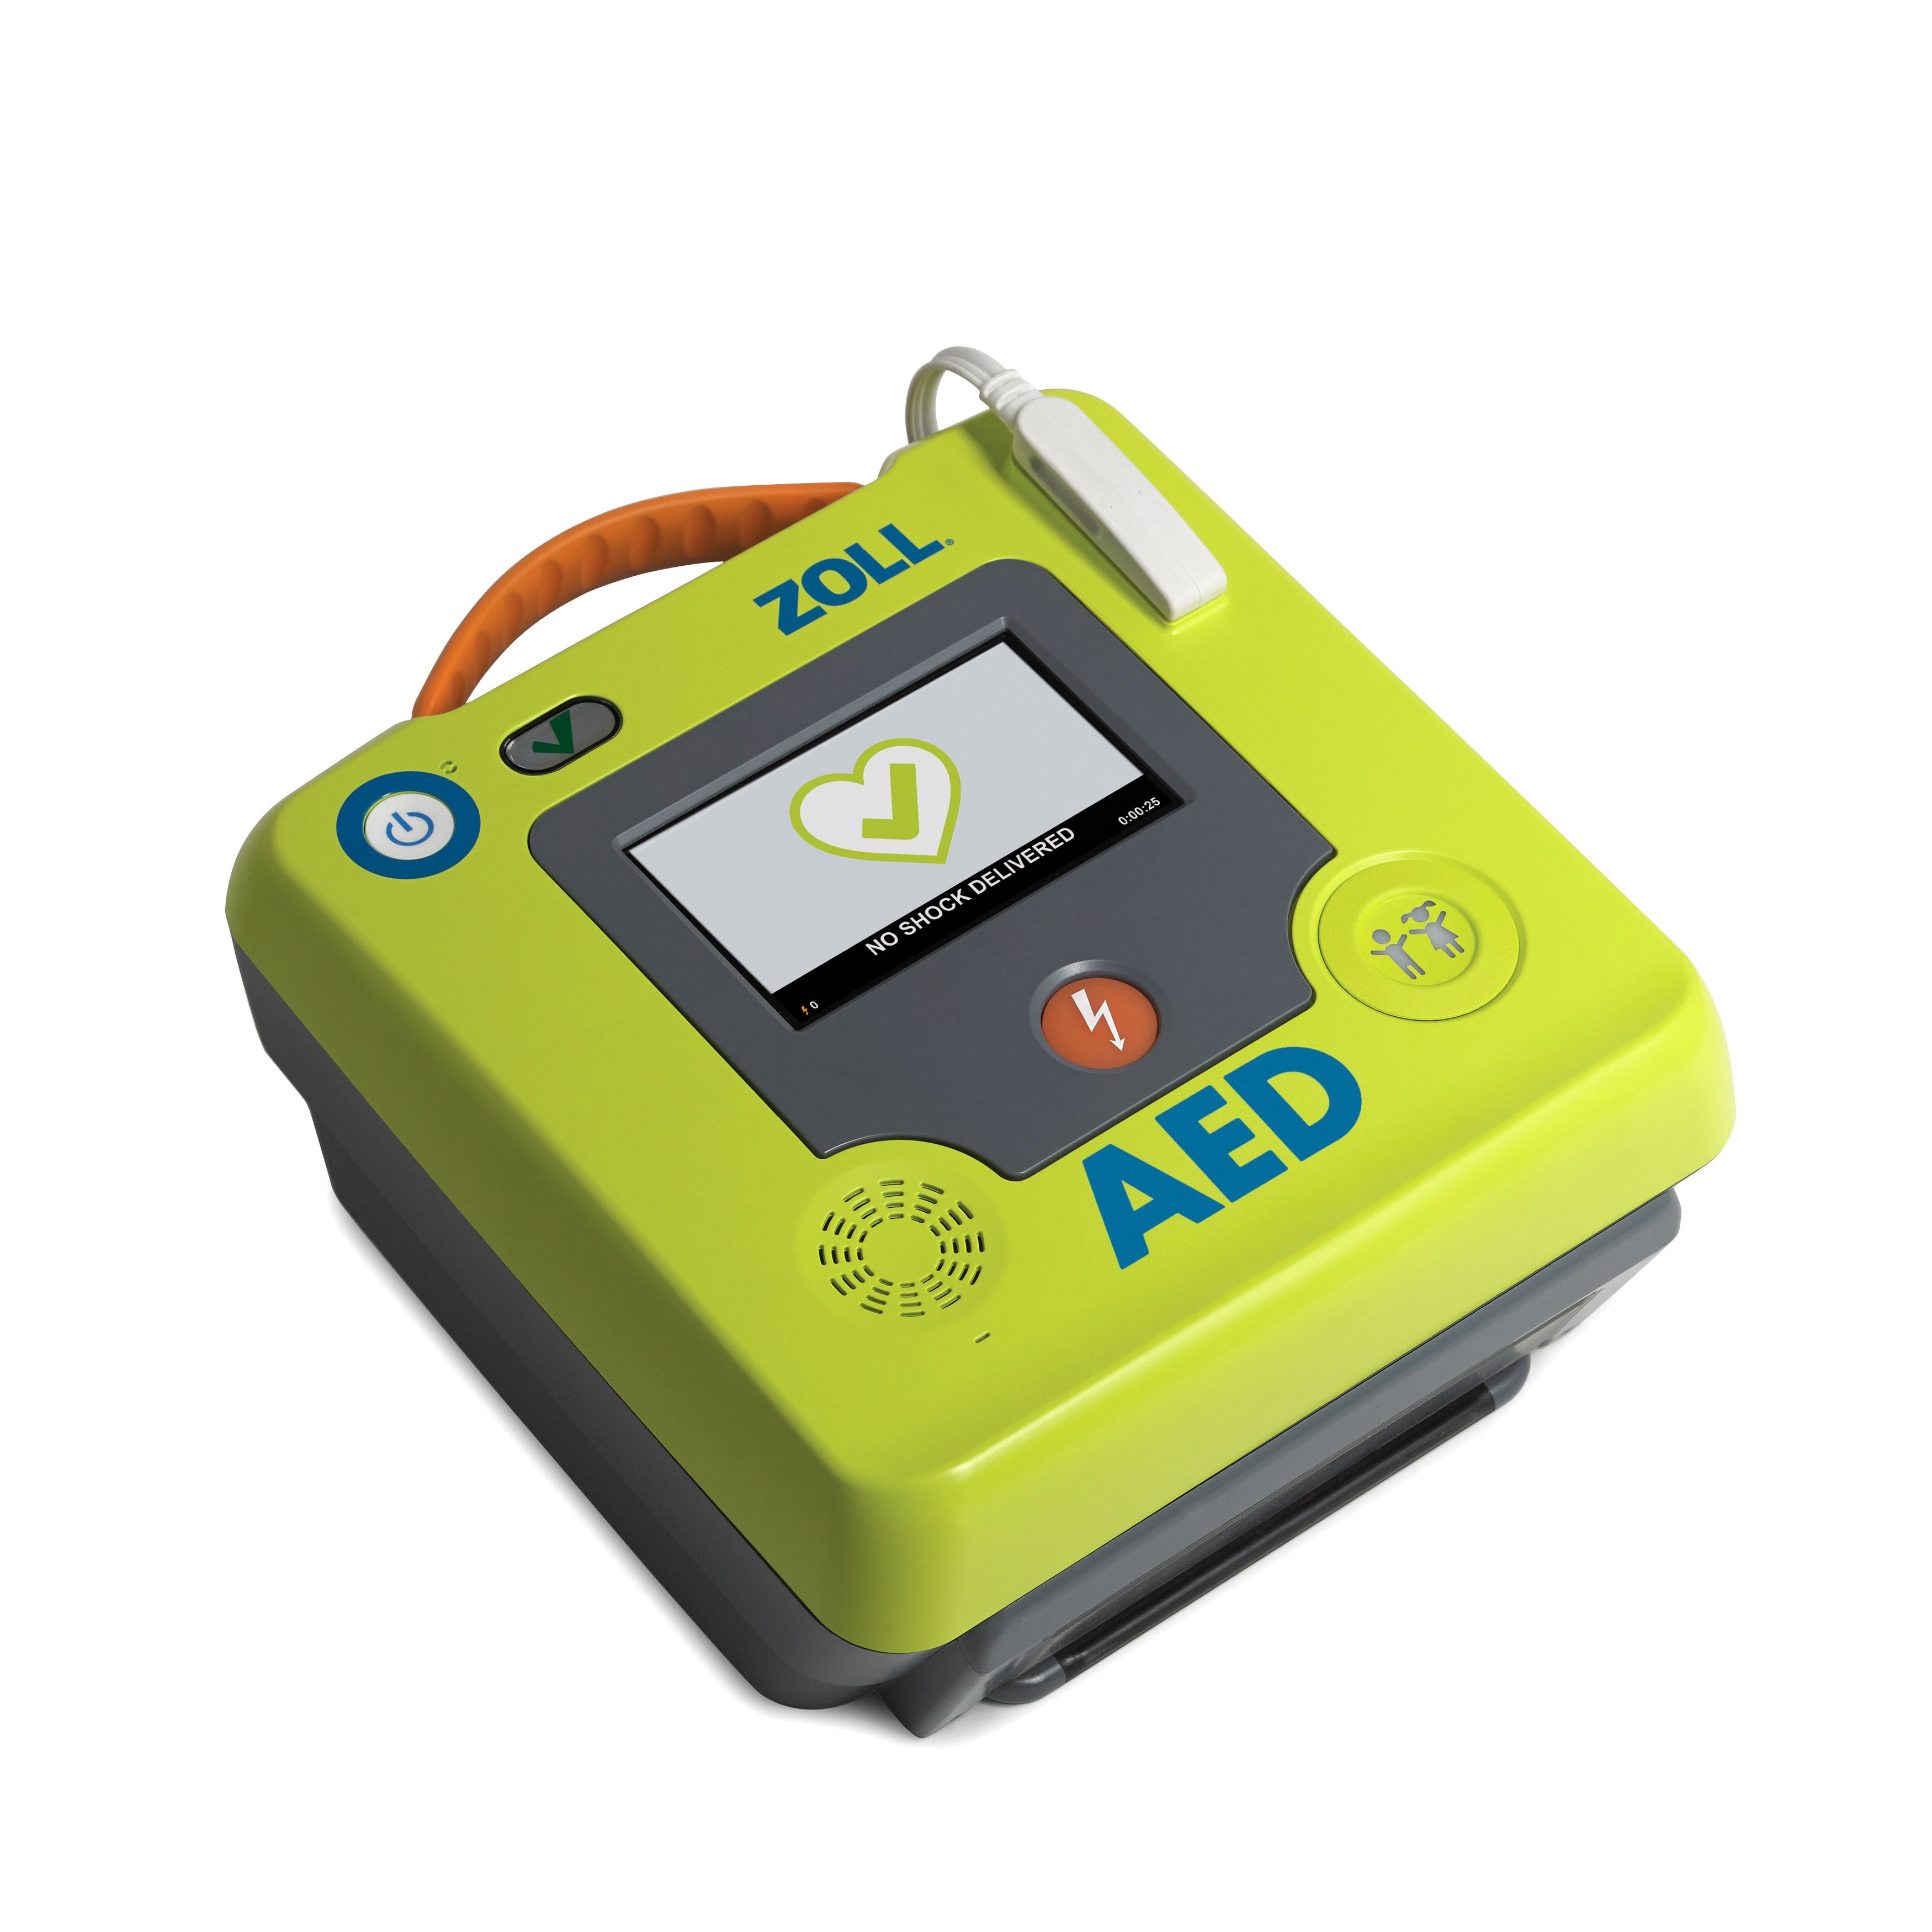 Automatický defibrilátor AED 3